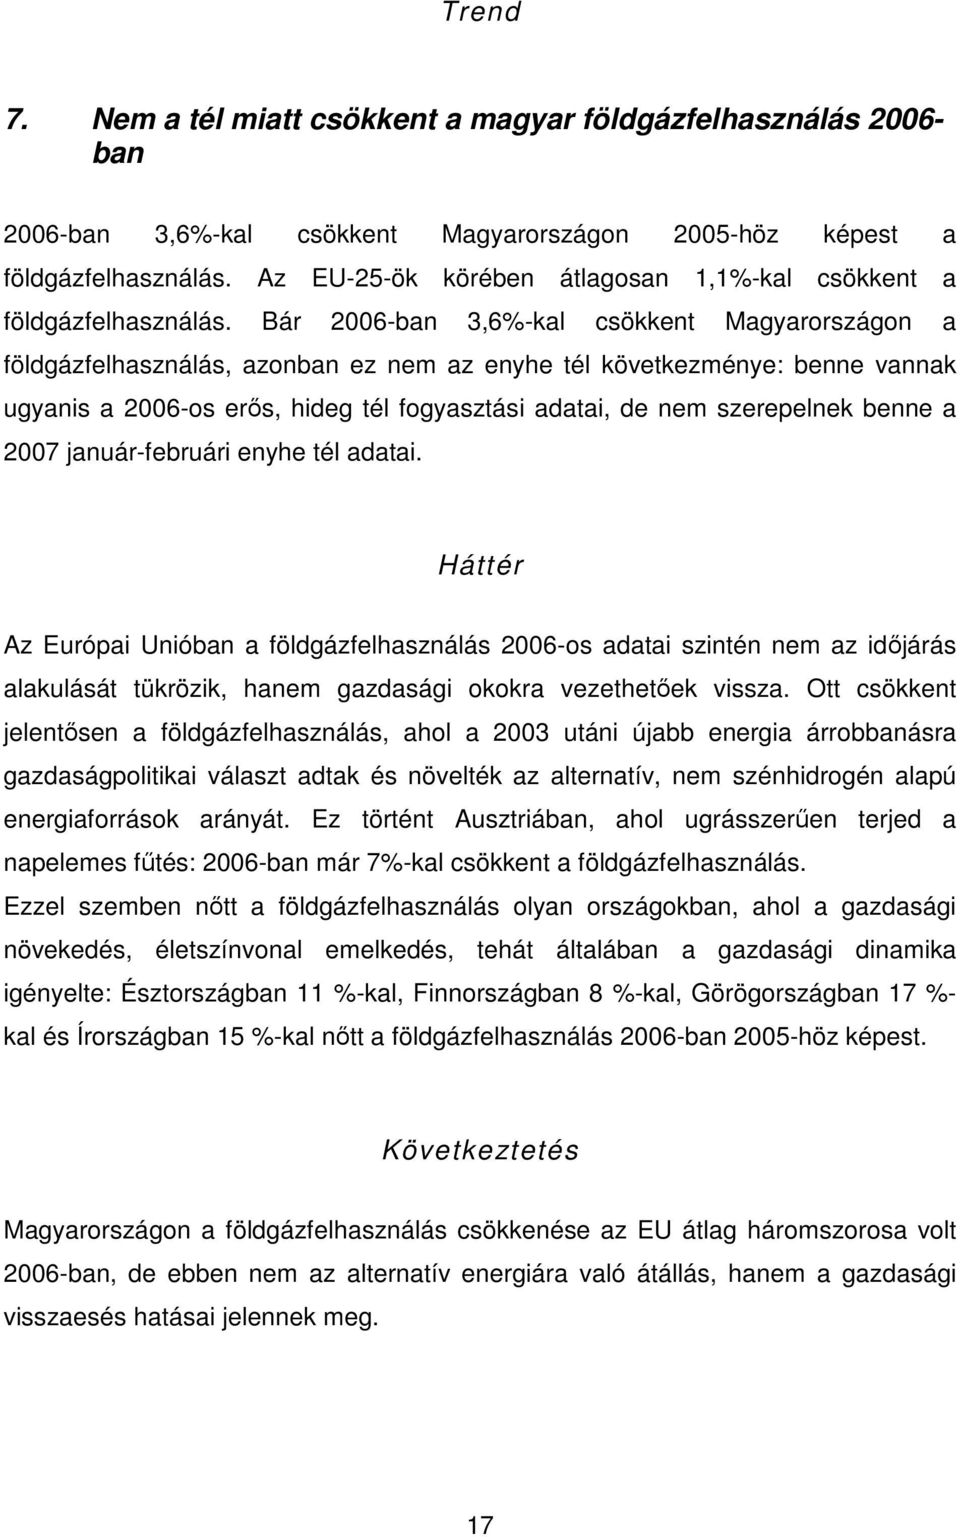 Bár 2006-ban 3,6%-kal csökkent Magyarországon a földgázfelhasználás, azonban ez nem az enyhe tél következménye: benne vannak ugyanis a 2006-os erıs, hideg tél fogyasztási adatai, de nem szerepelnek